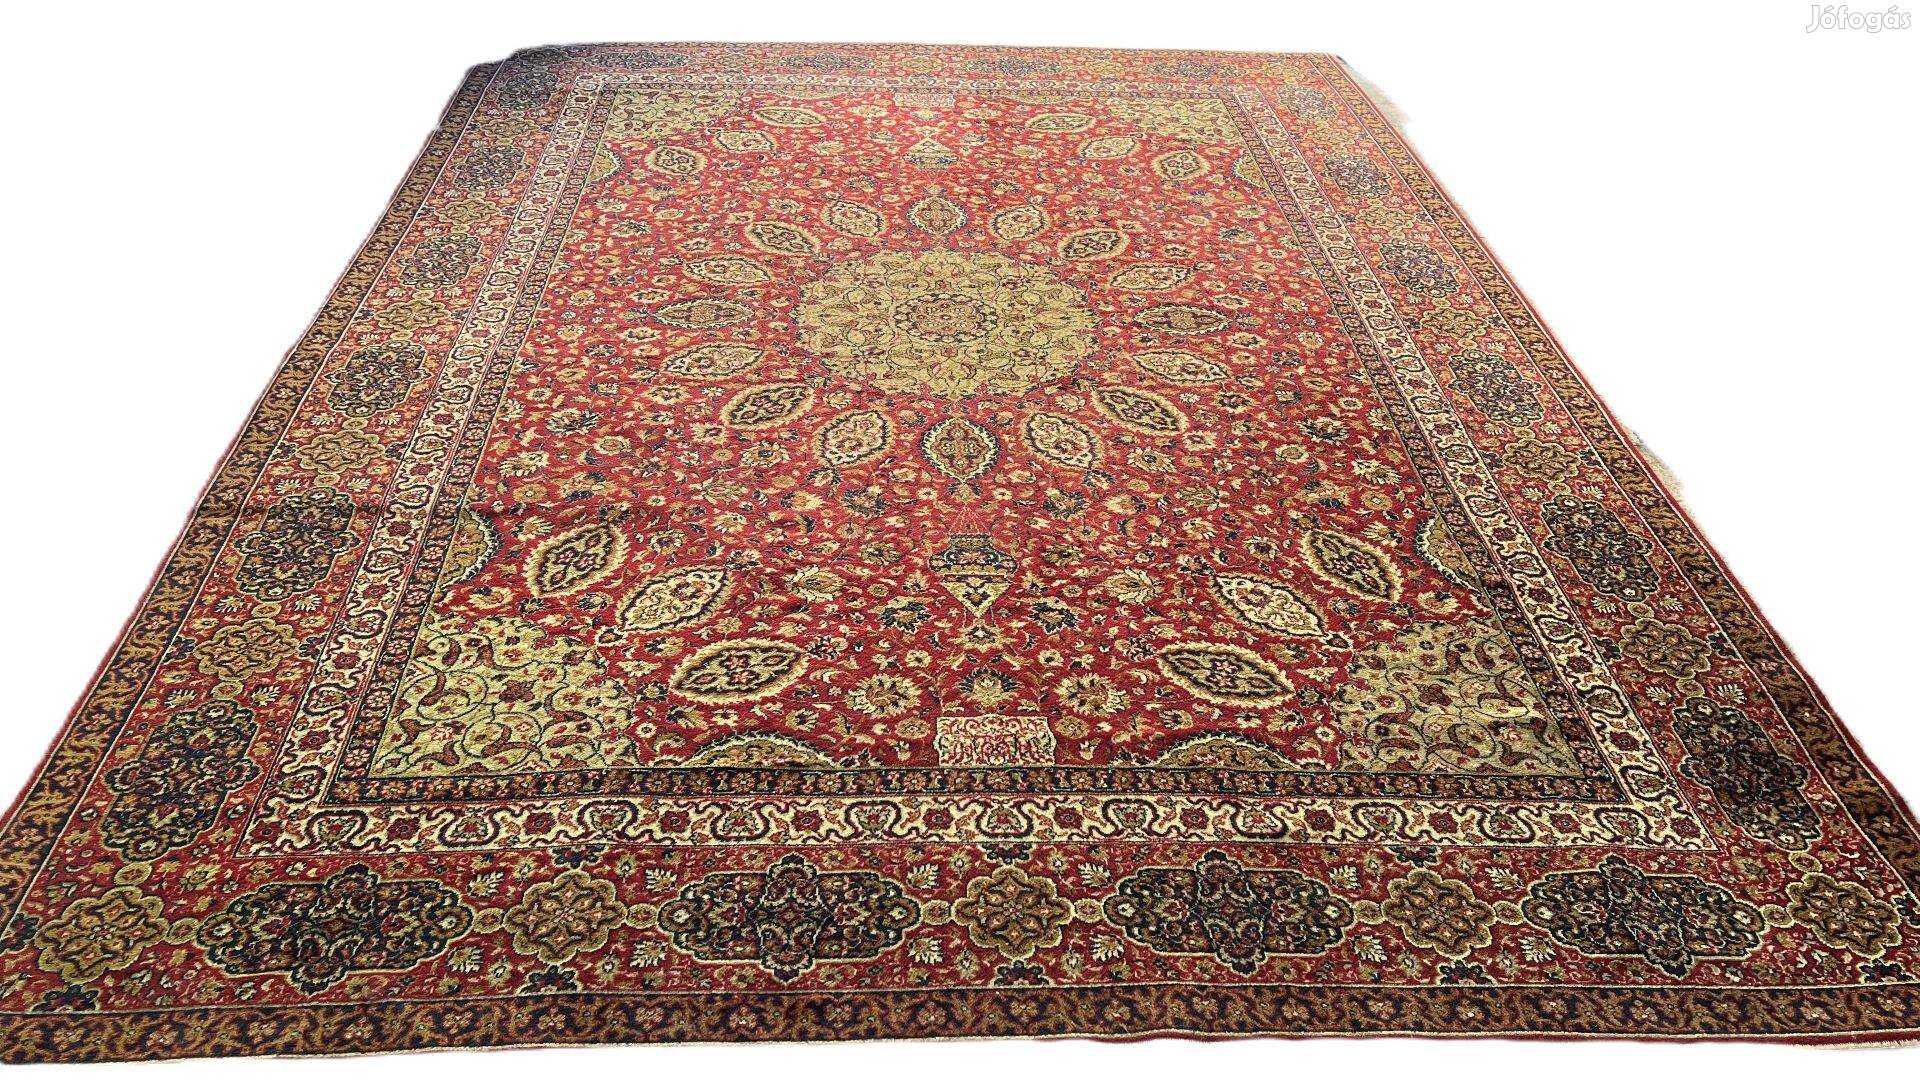 3628 Hatalmas Tabriz mintás gyapjú perzsa szőnyeg 300x405CM Ingyen FUT